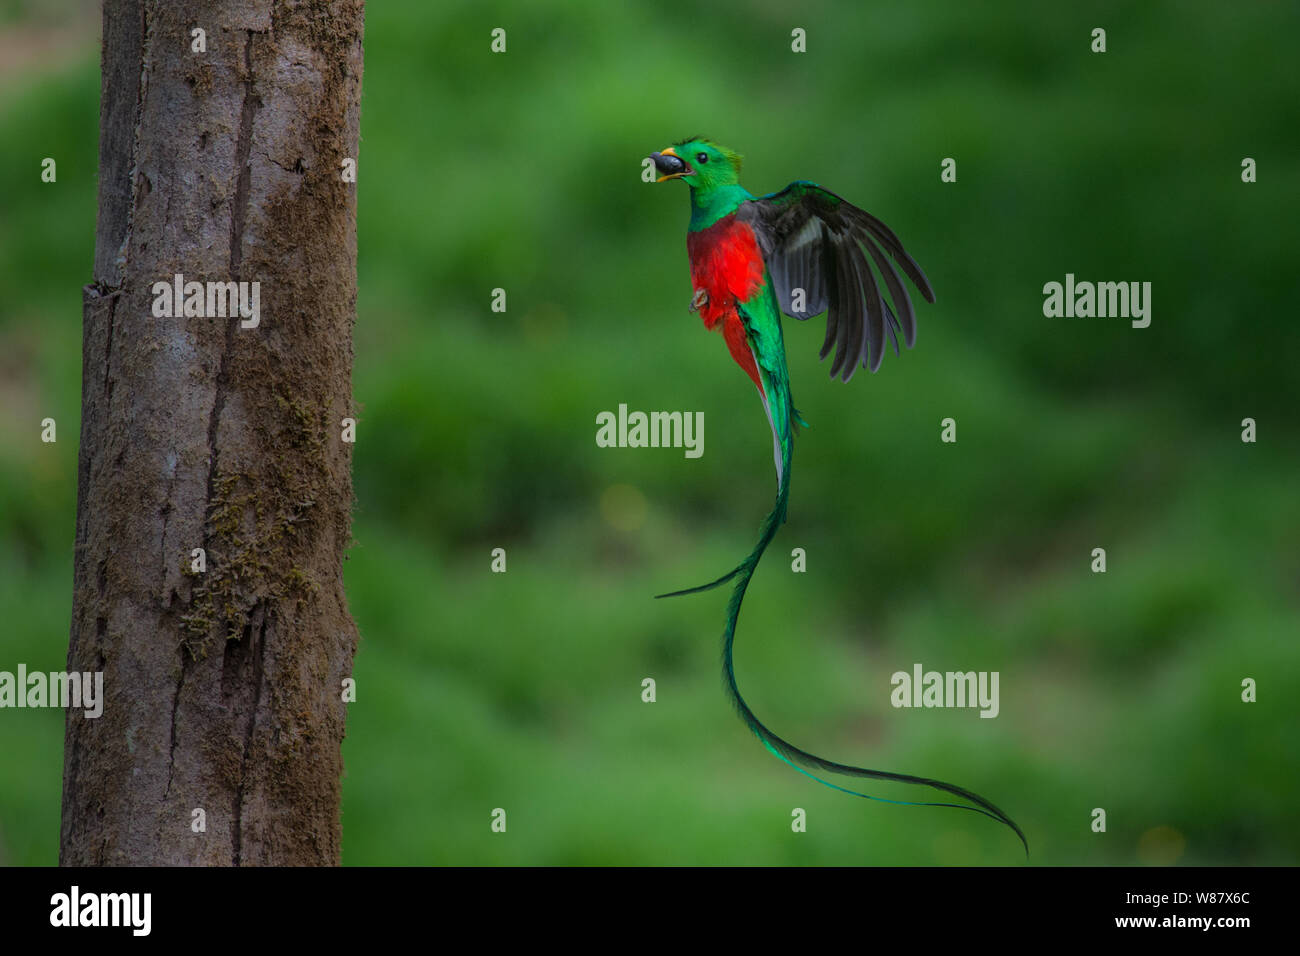 Este volaba quetzal fue tomada en el bosque nuboso de Costa Rica Foto de stock